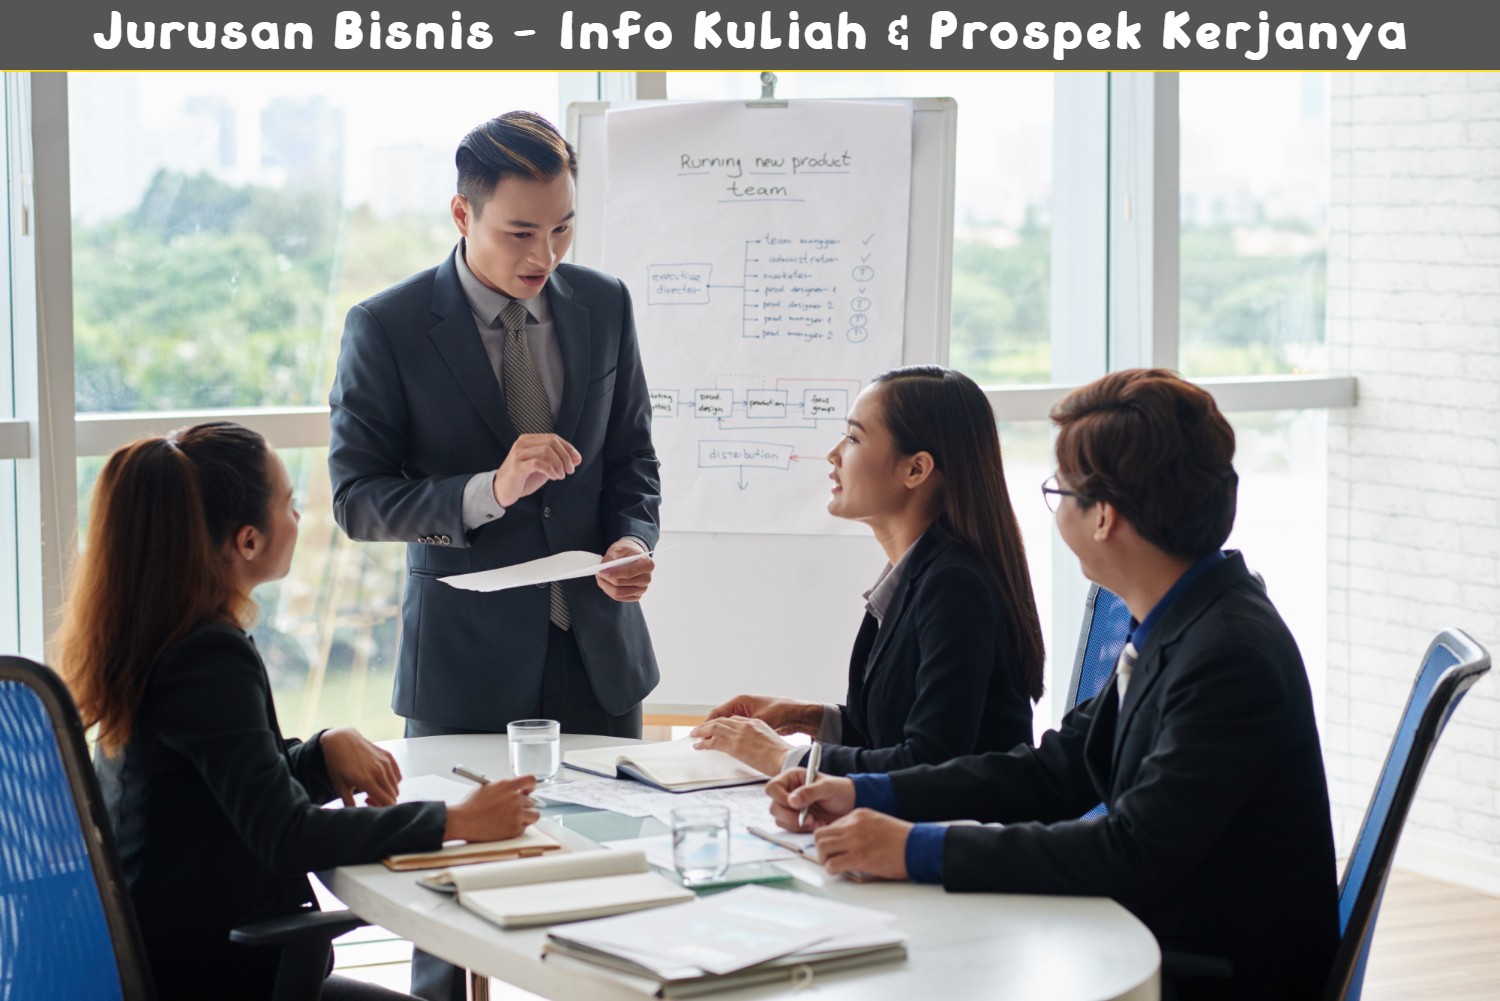 Jurusan Bisnis - Info Kuliah & Prospek Kerjanya